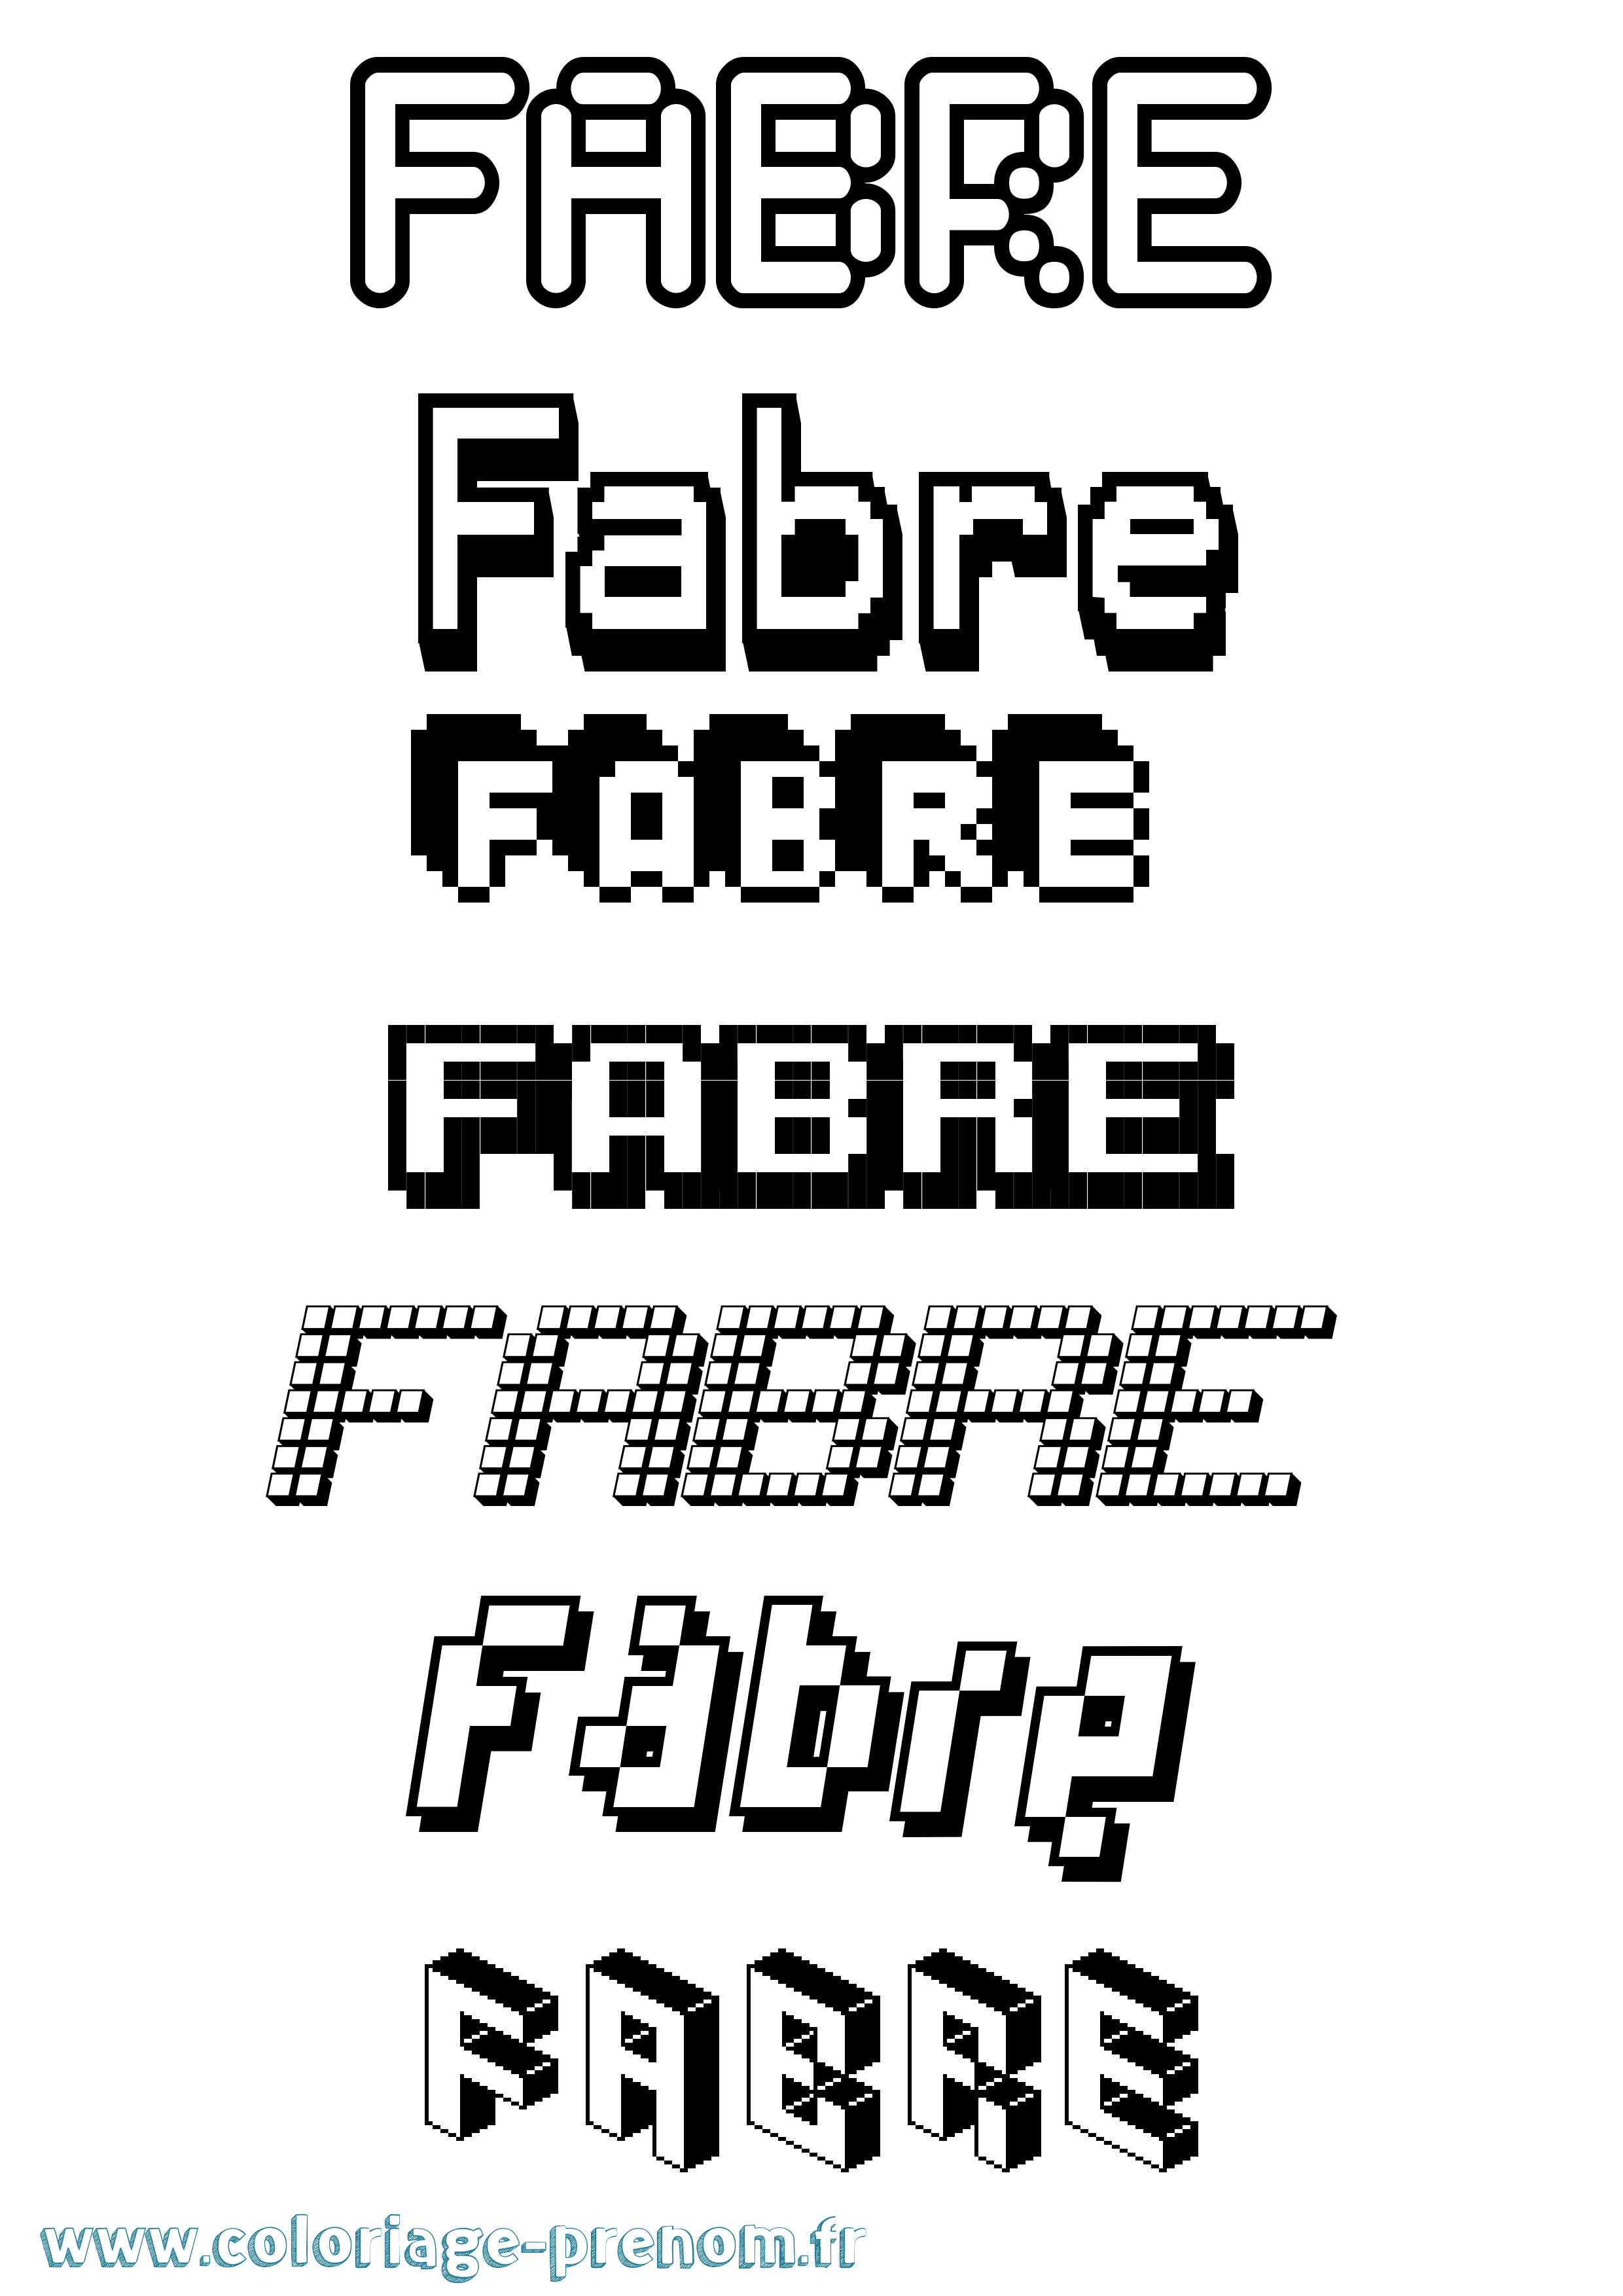 Coloriage prénom Fabre Pixel